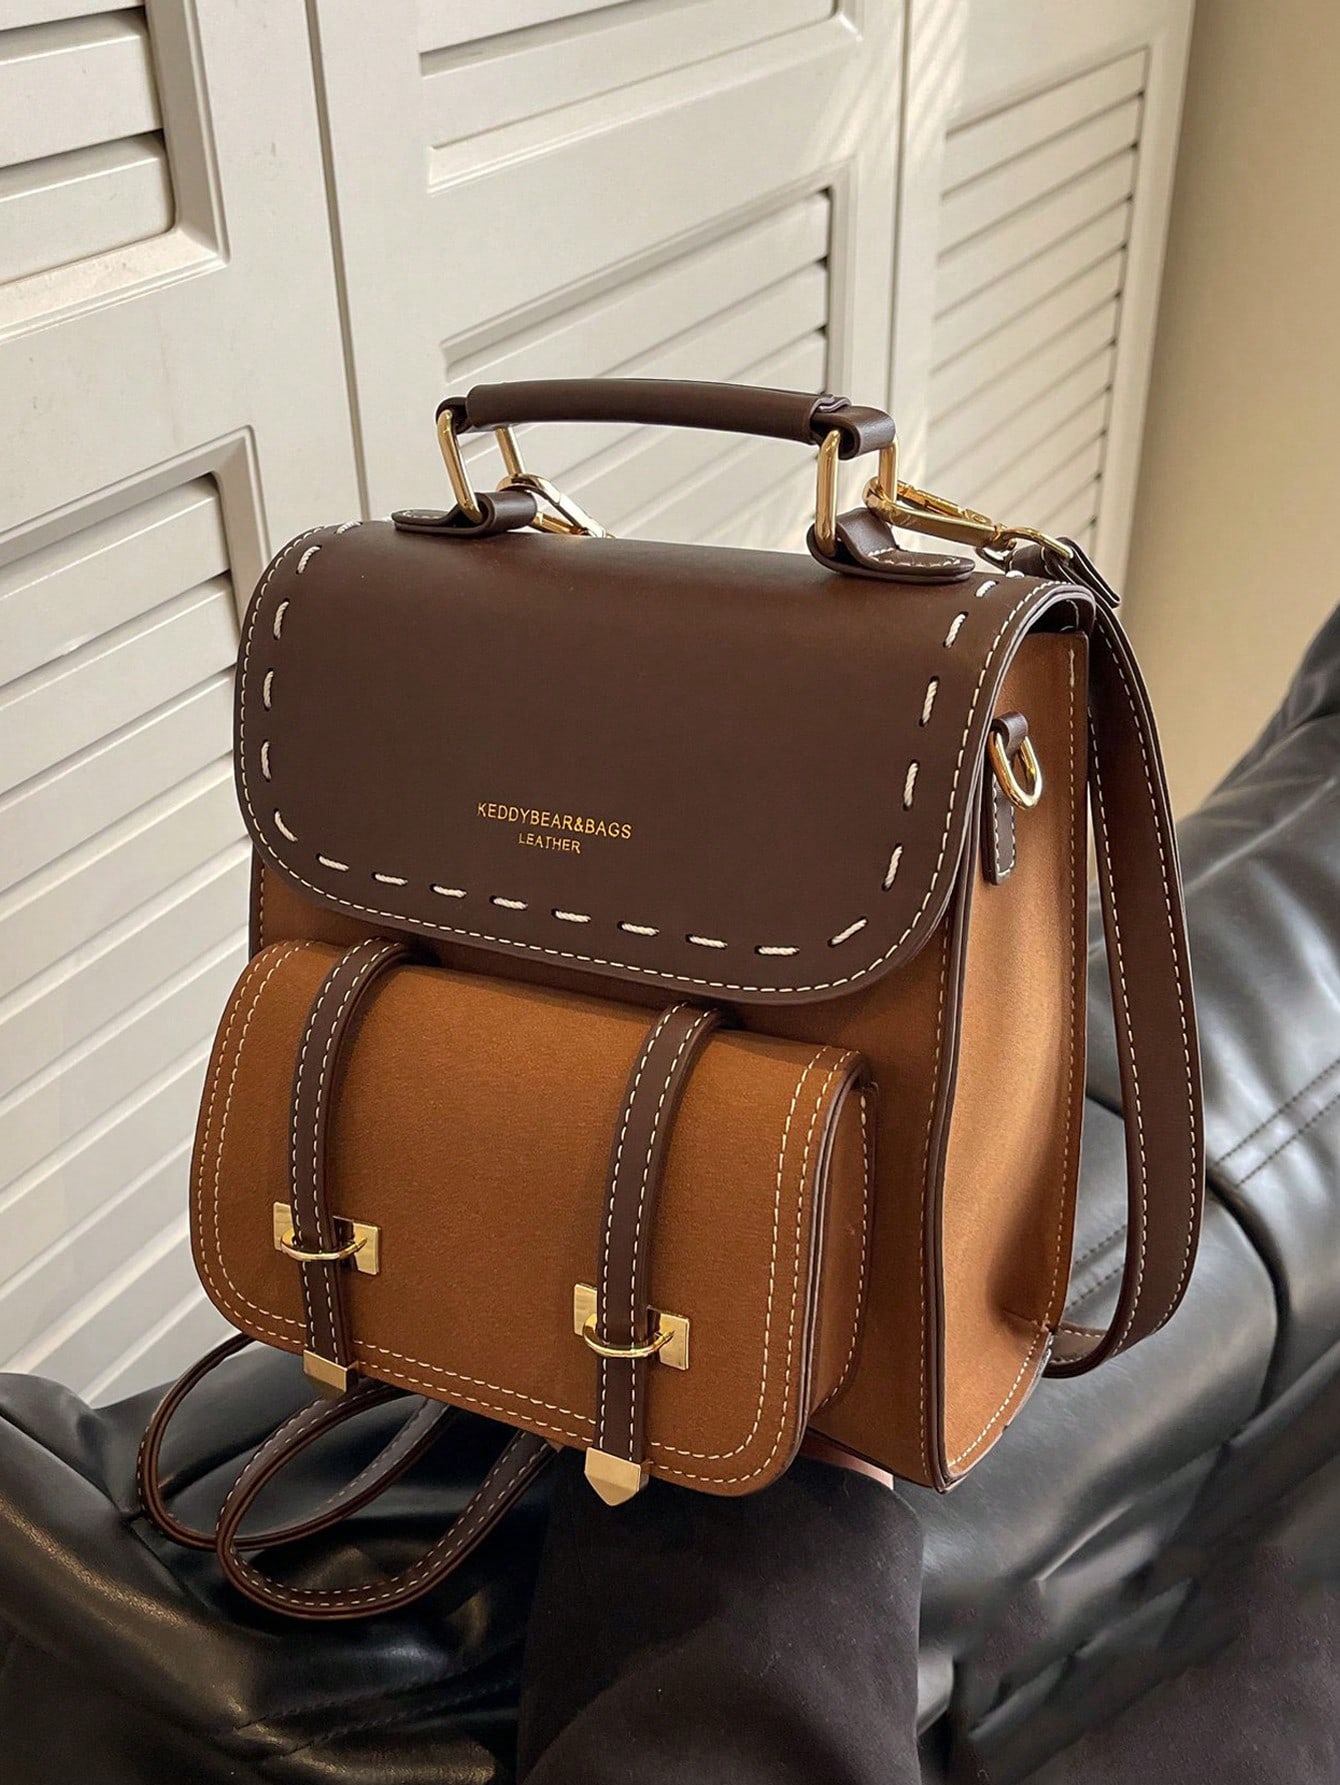 винтажный рюкзак на плечо 17 дюймов с изображением флага фландии Легкий портативный винтажный небольшой рюкзак с цветными блоками/сумка на плечо для женщин, кофейный коричневый